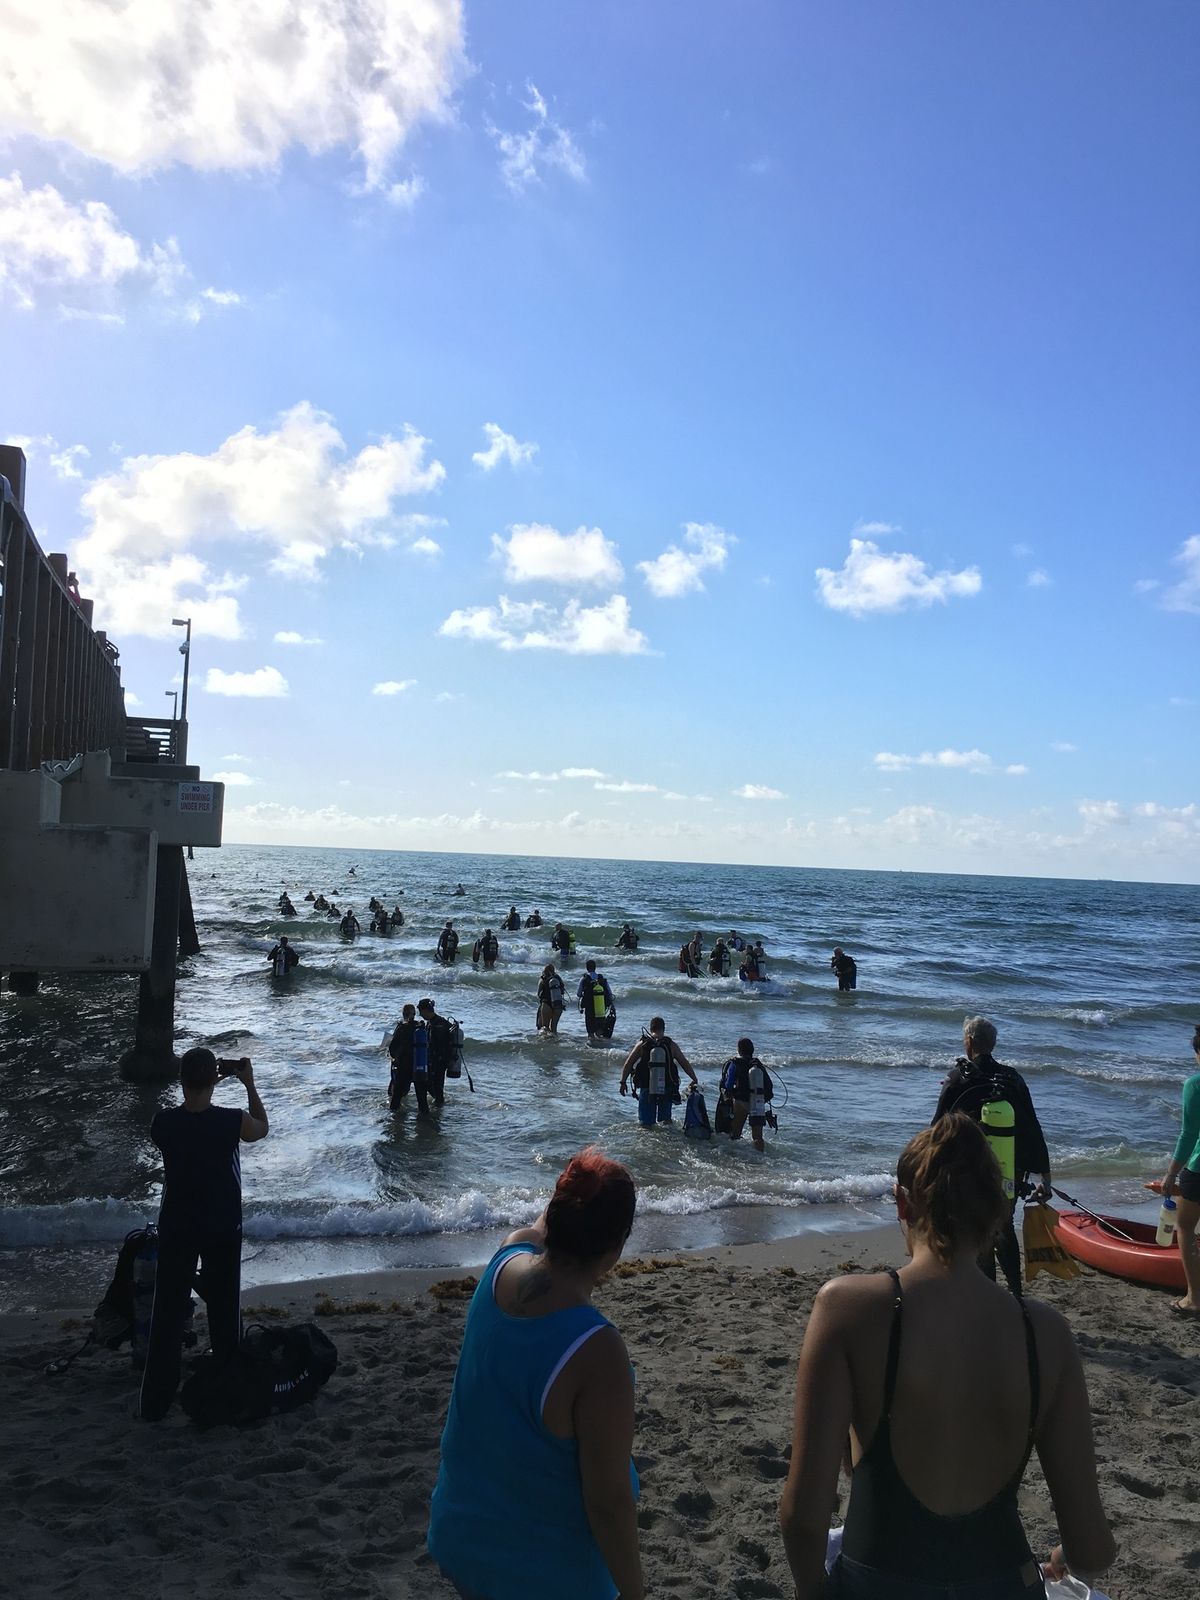 10th Annual Dania Beach Pier Clean Up